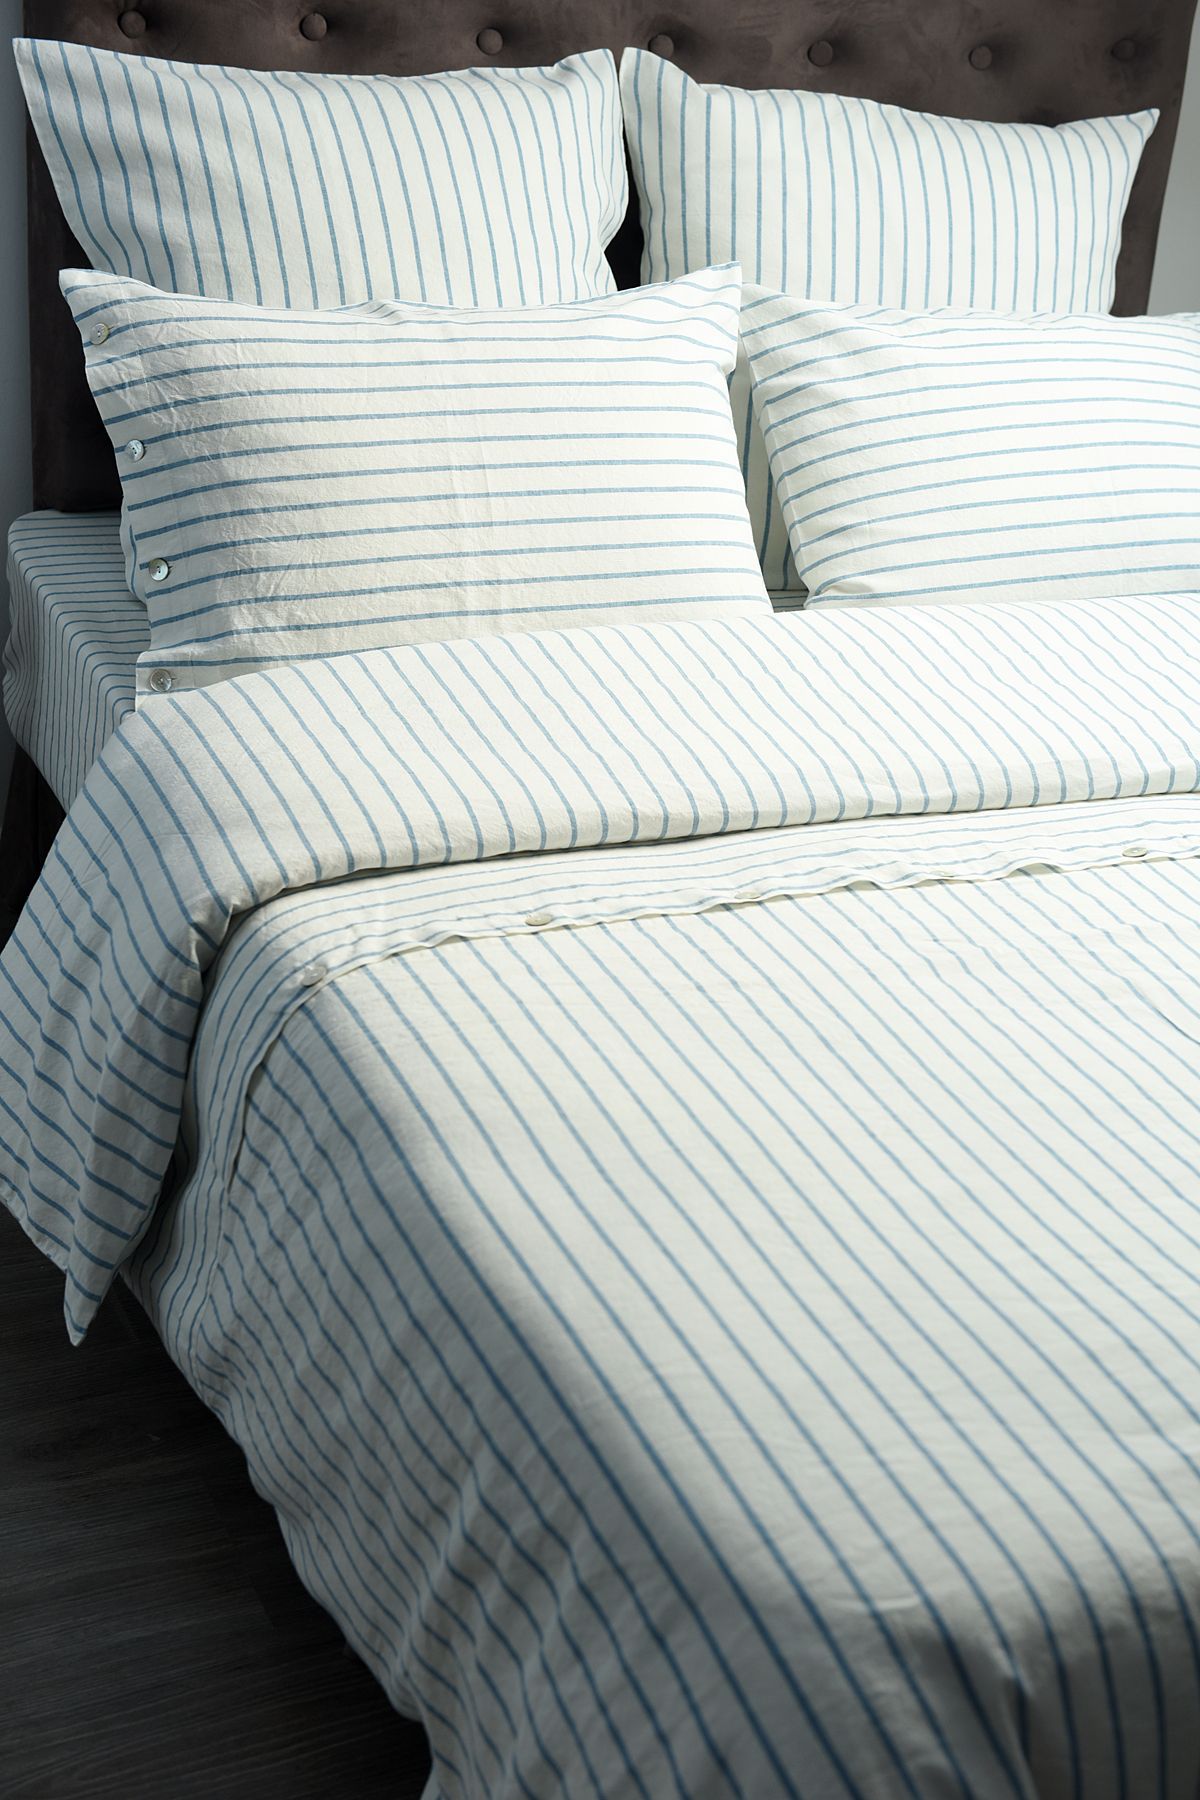 Льняное постельное белье: КПБ Стиль в составе 55% лен 45% хлопок, цена от24900 руб. в интернет-магазине LinoRusso